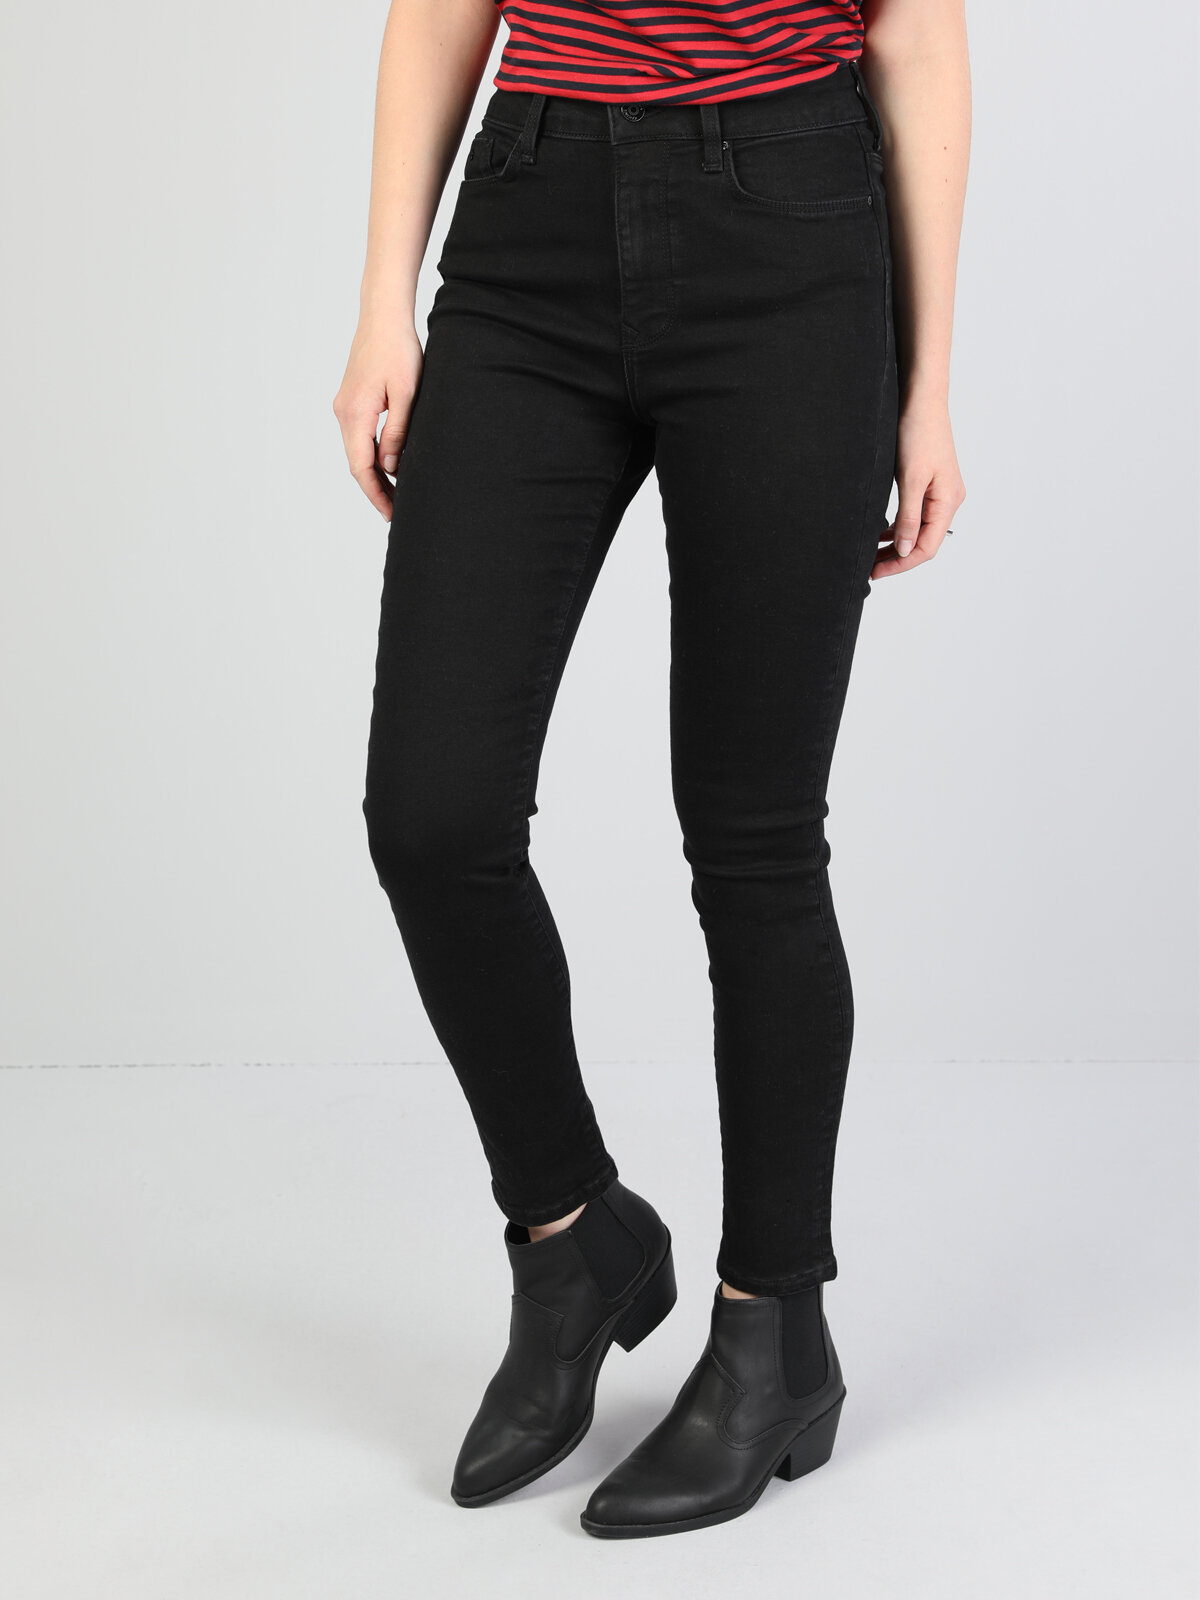 Colins 760 Dıana Yüksek Bel Dar Paça Super Slim Fit Siyah Kadın Jean Pantolon. 4